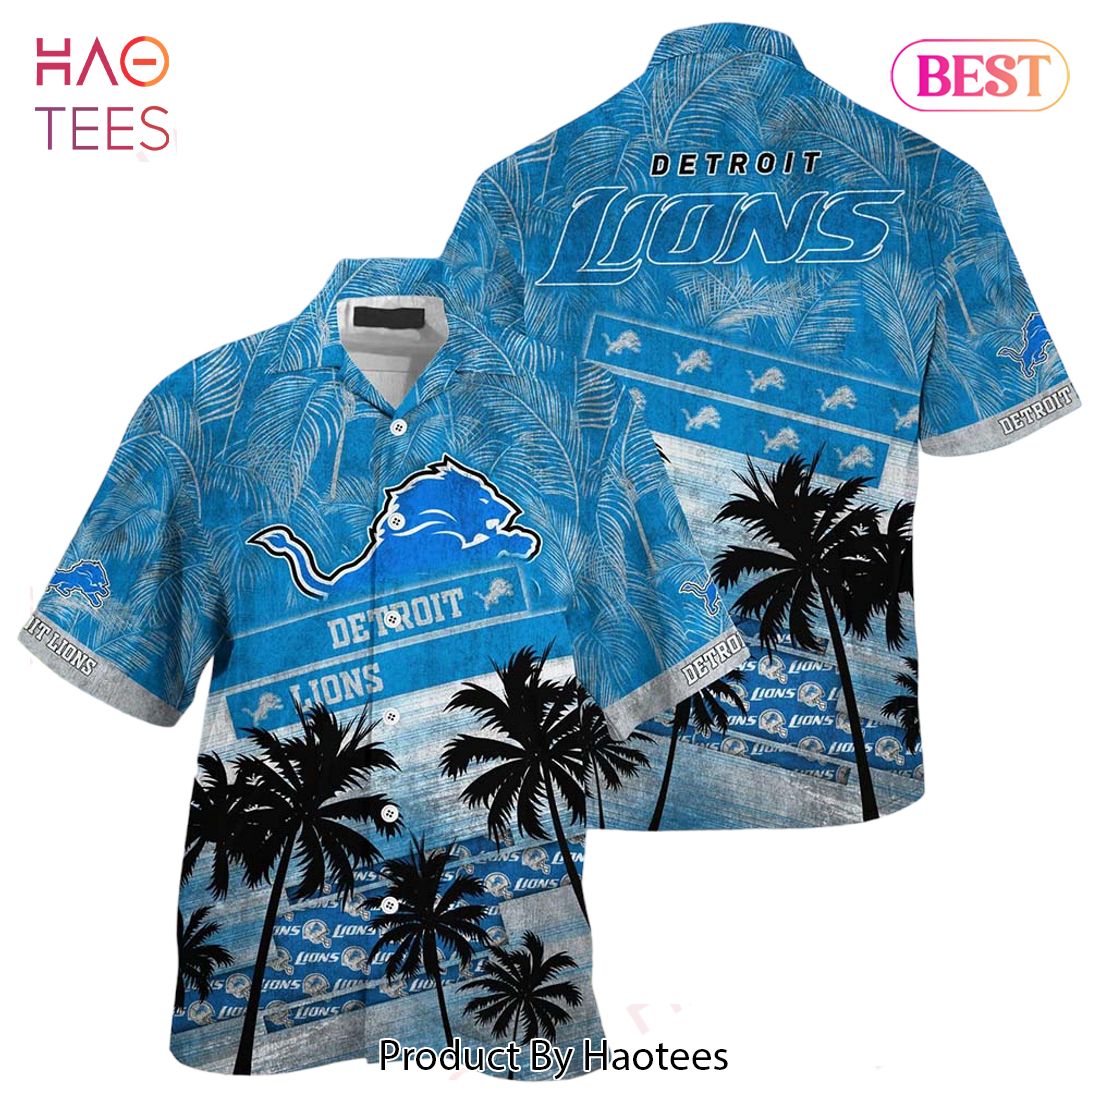 HOT TREND Detroit Lions NFL Hawaiian Shirt Trending Summer For Sports Football Fans